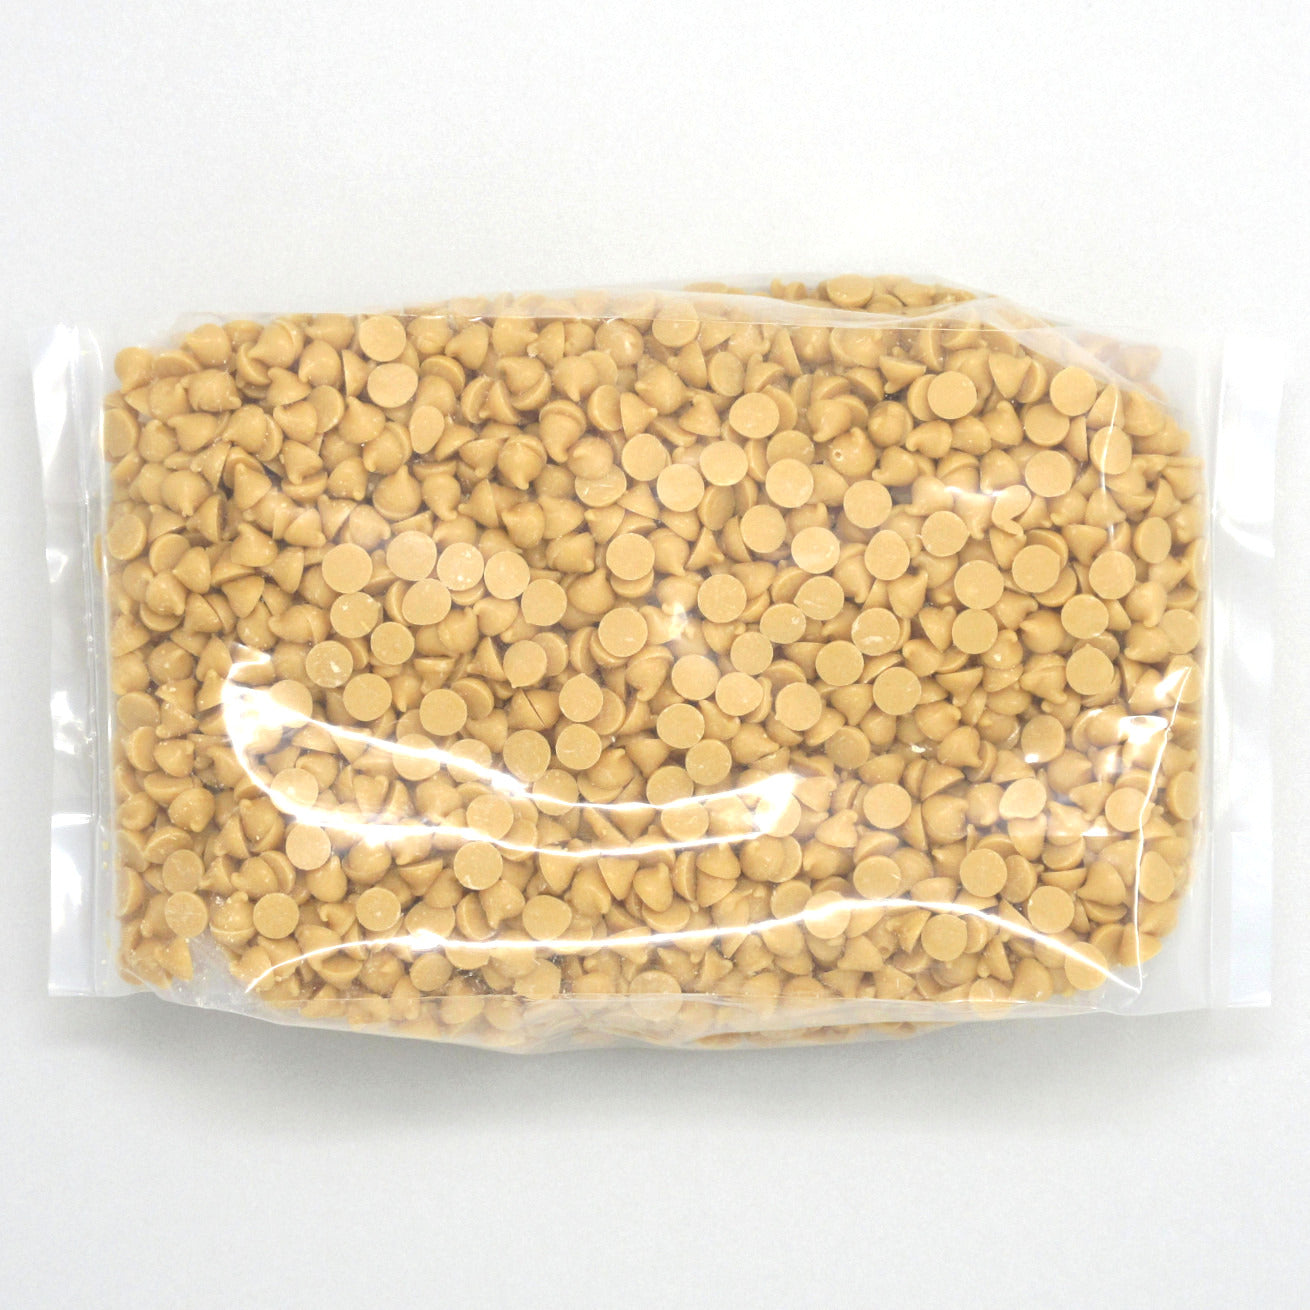 Flour Barrel product image - Butterscotch Chips